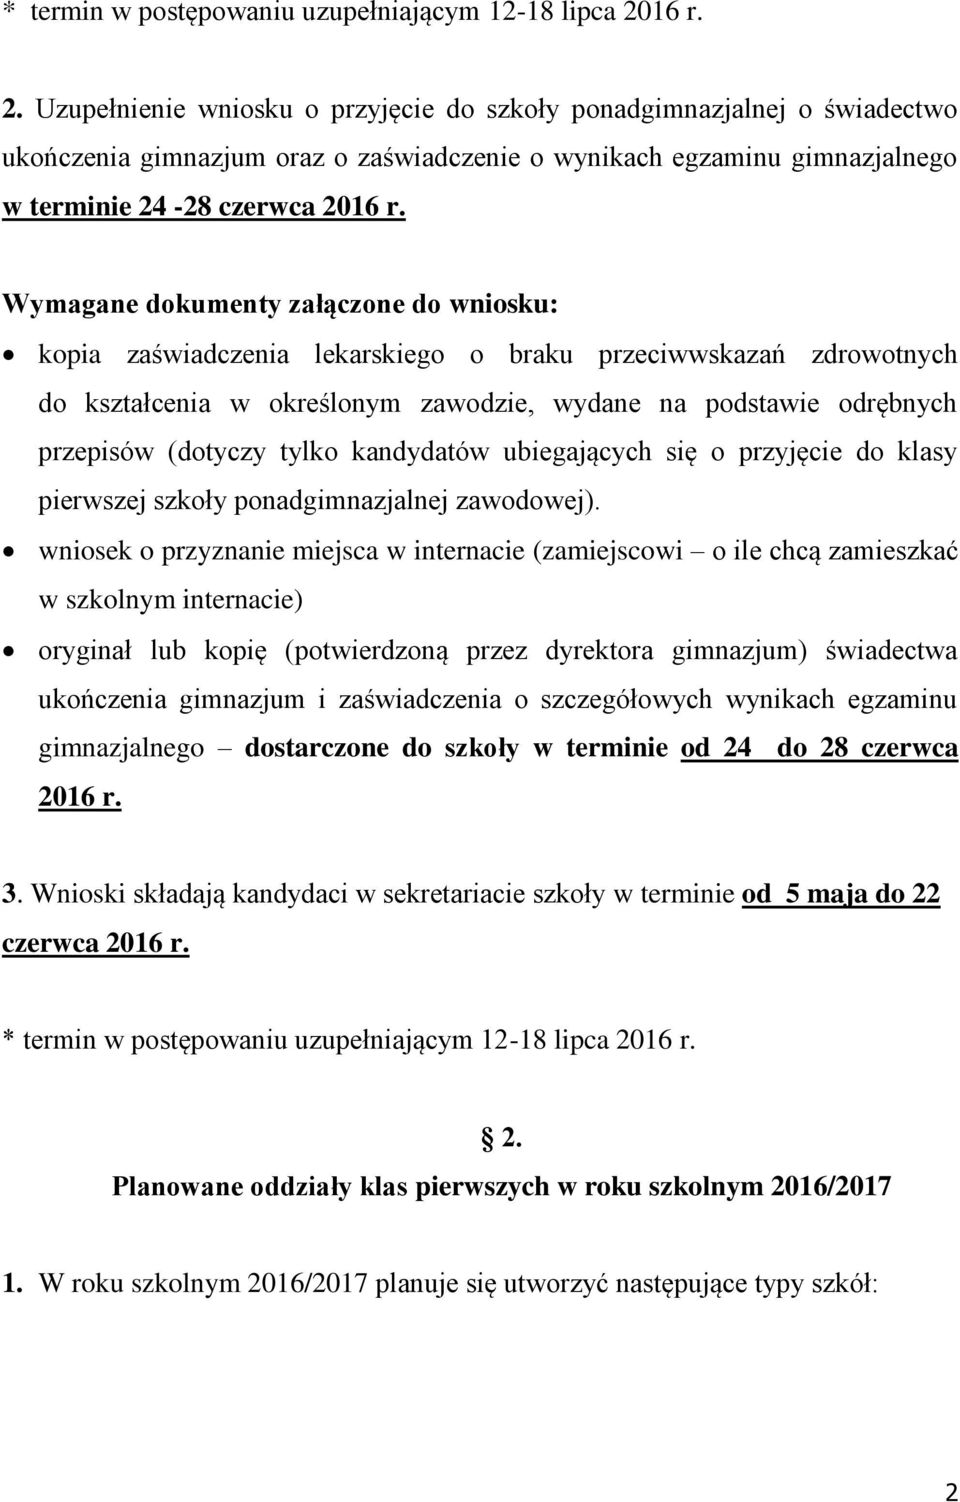 Wymagane dokumenty załączone do wniosku: kopia zaświadczenia lekarskiego o braku przeciwwskazań zdrowotnych do kształcenia w określonym zawodzie, wydane na podstawie odrębnych przepisów (dotyczy